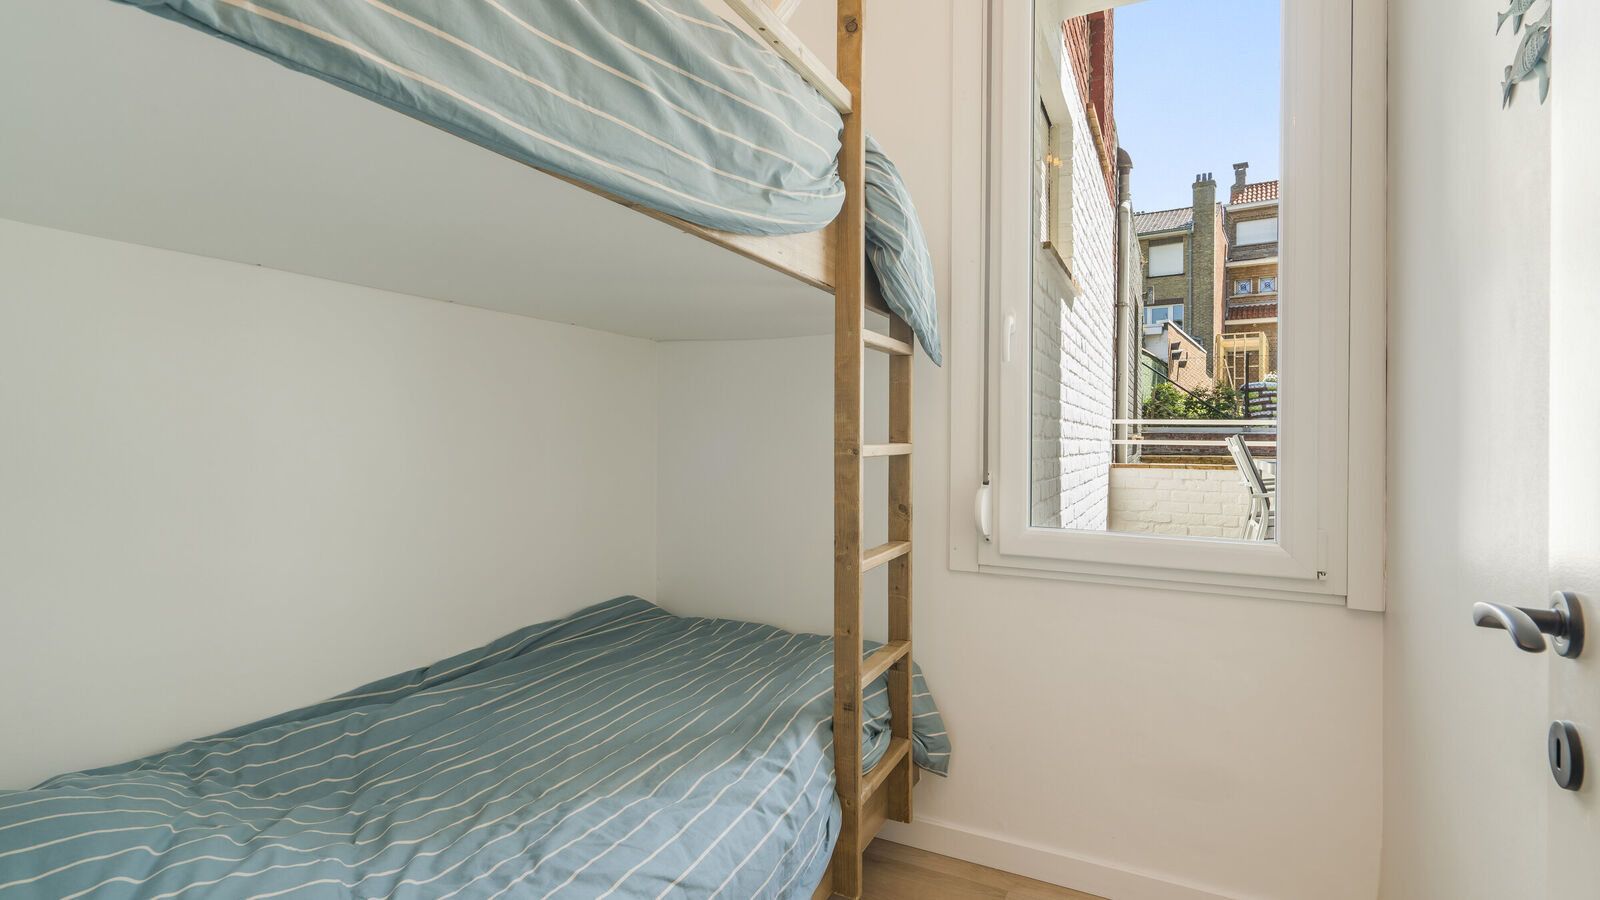 App. 2 bedrooms in De Panne